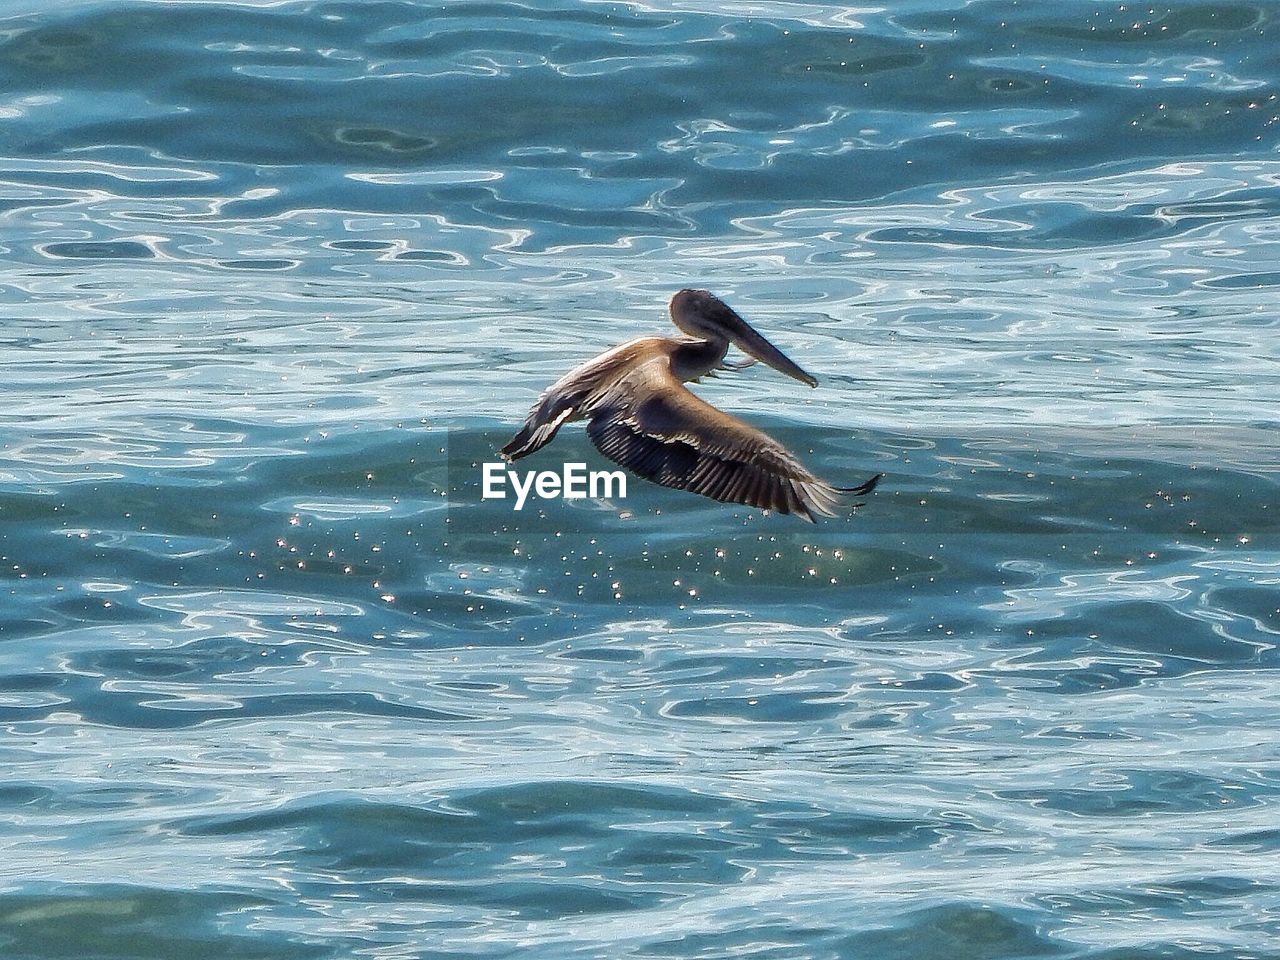 Pelican flying over sea